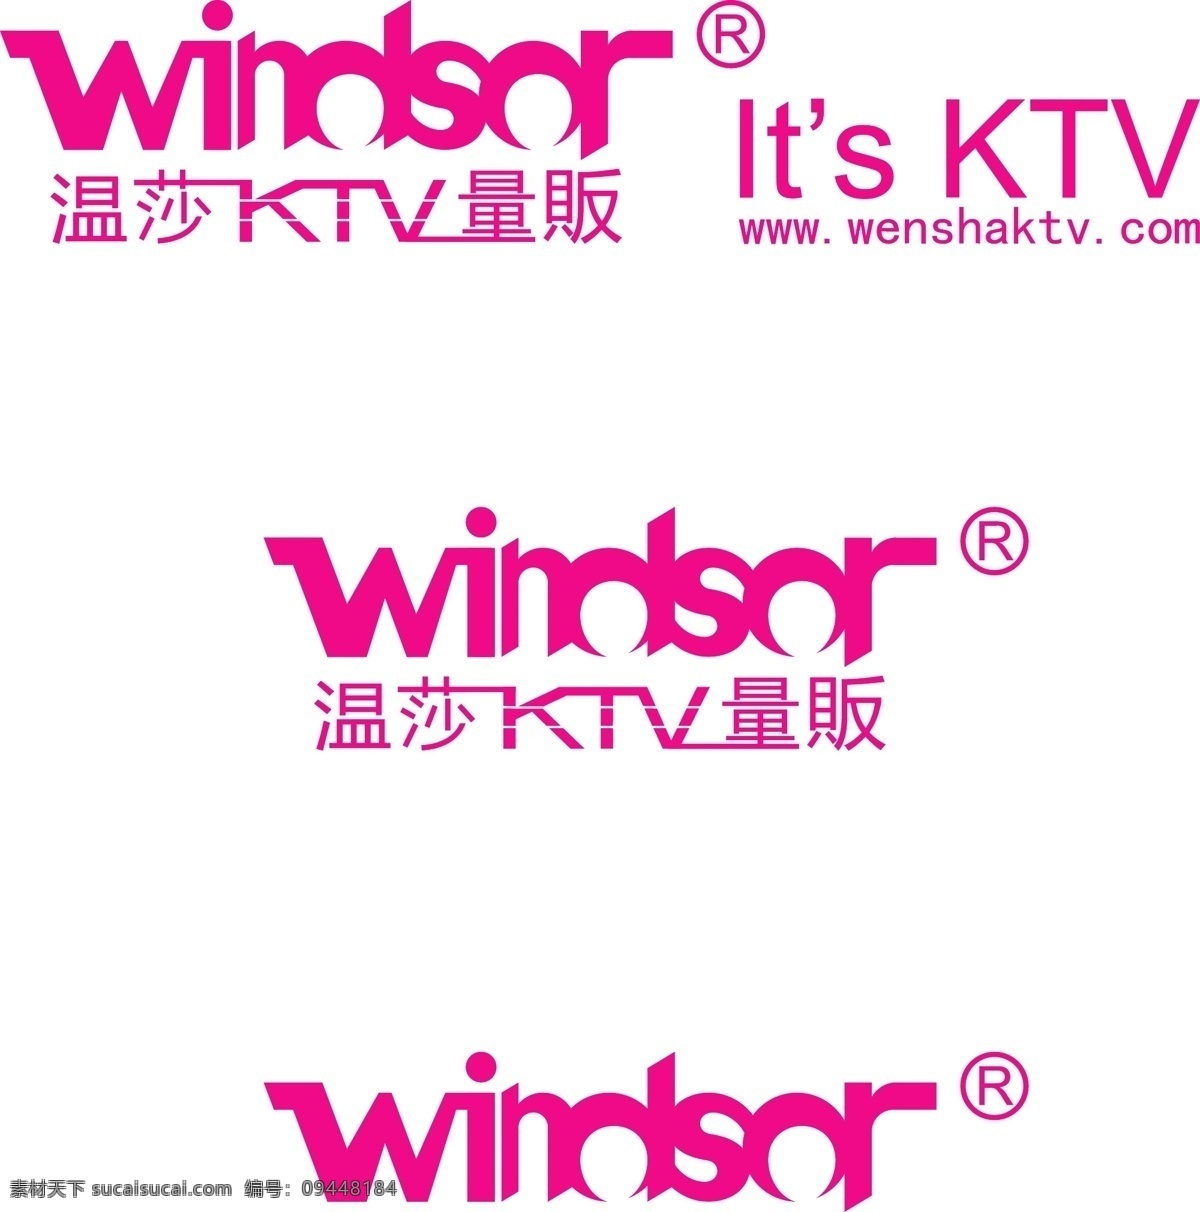 温莎 ktv 矢量 标志 温莎ktv logo 标识 矢量标志 企业 标识标志图标